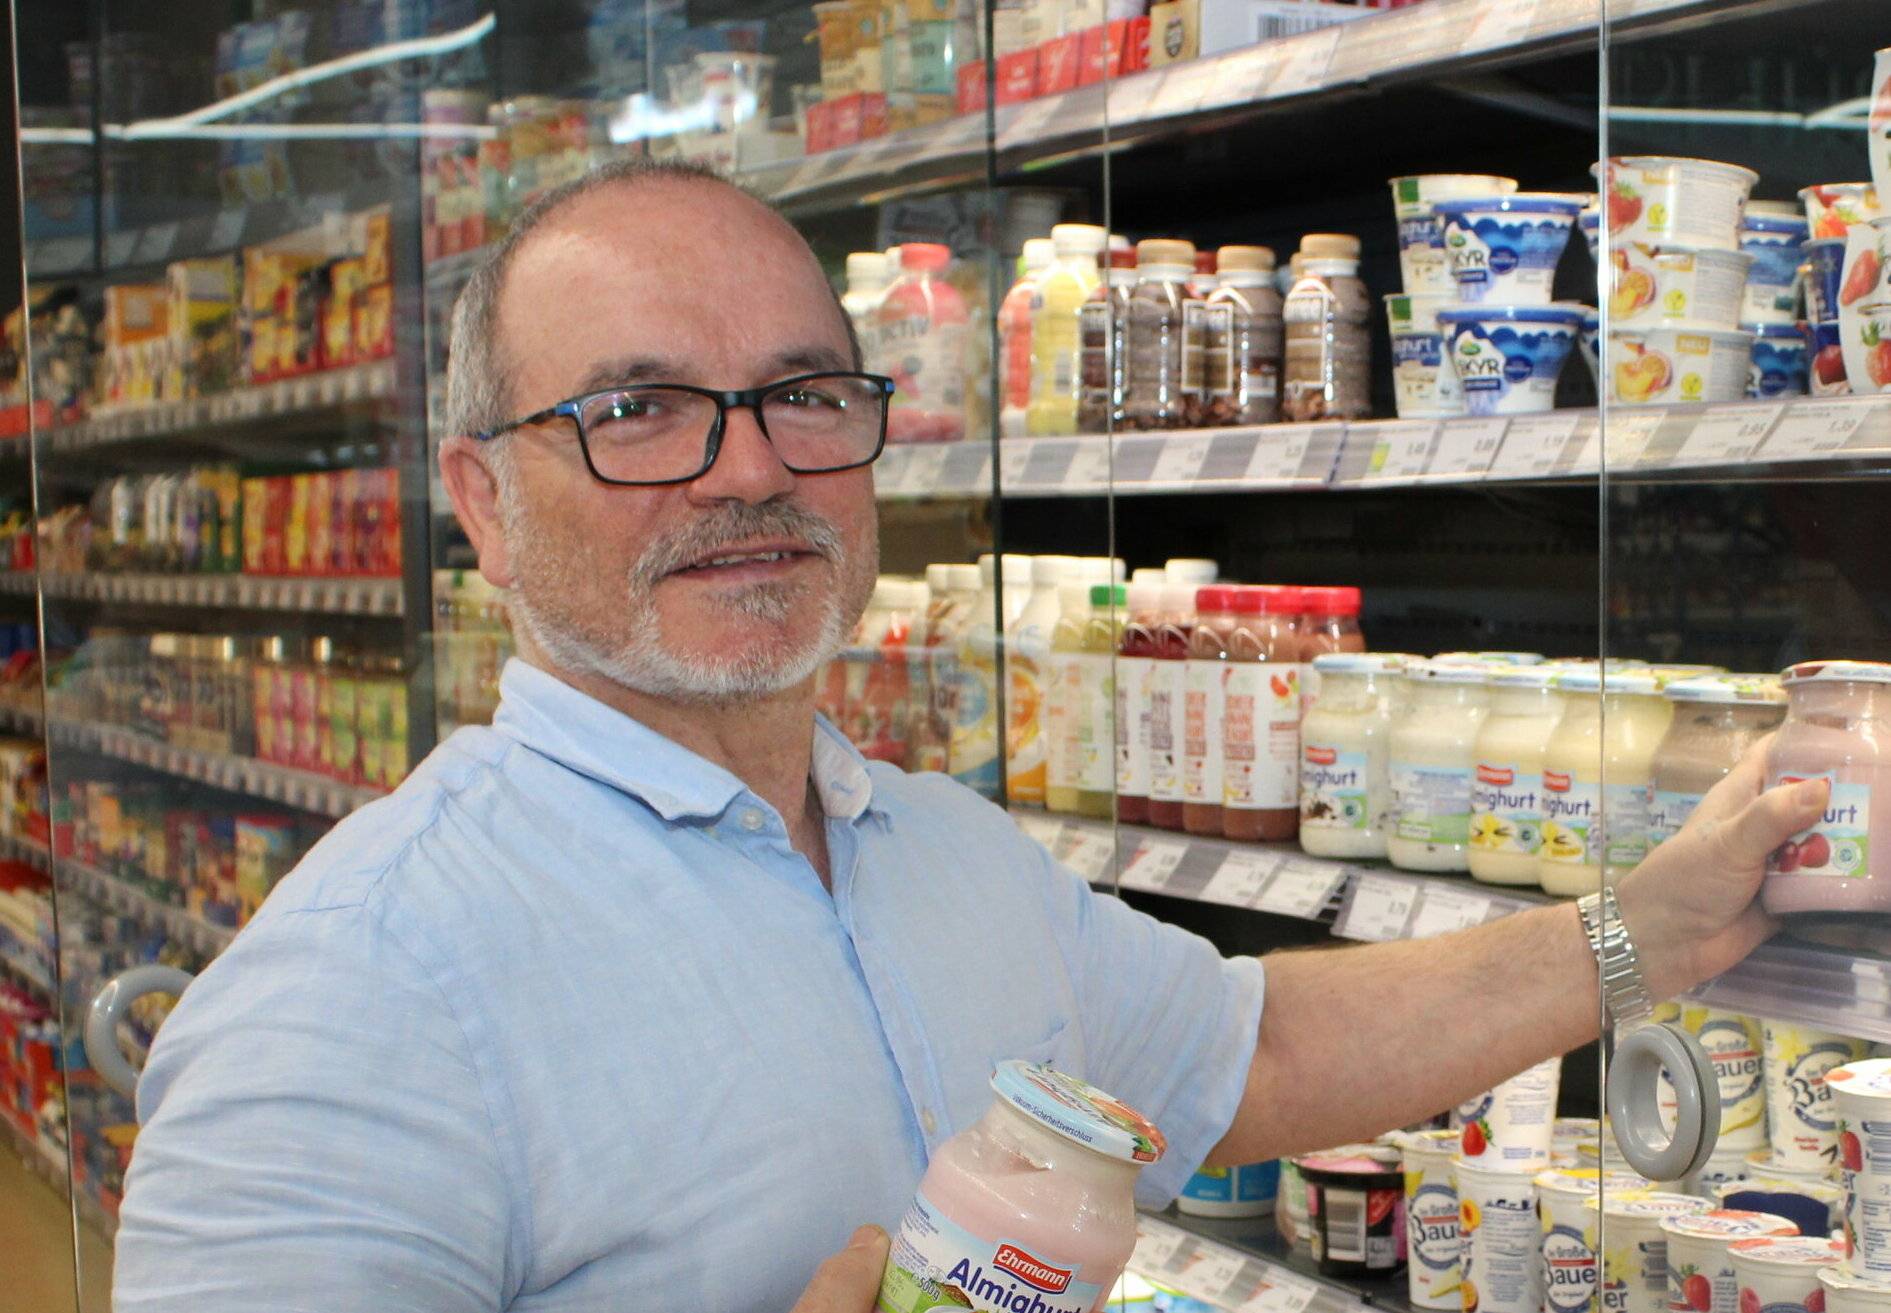  Rosario Rizzo vor dem Kühlregal seines Supermarktes. Zu der Zeit, als das Foto entstand, war er noch guter Dinge und gewillt um seinen Traum zu kämpfen. Doch nach den jüngsten Entwicklungen bei den Energiepreisen sieht er sich zur Aufgabe gezwungen. 